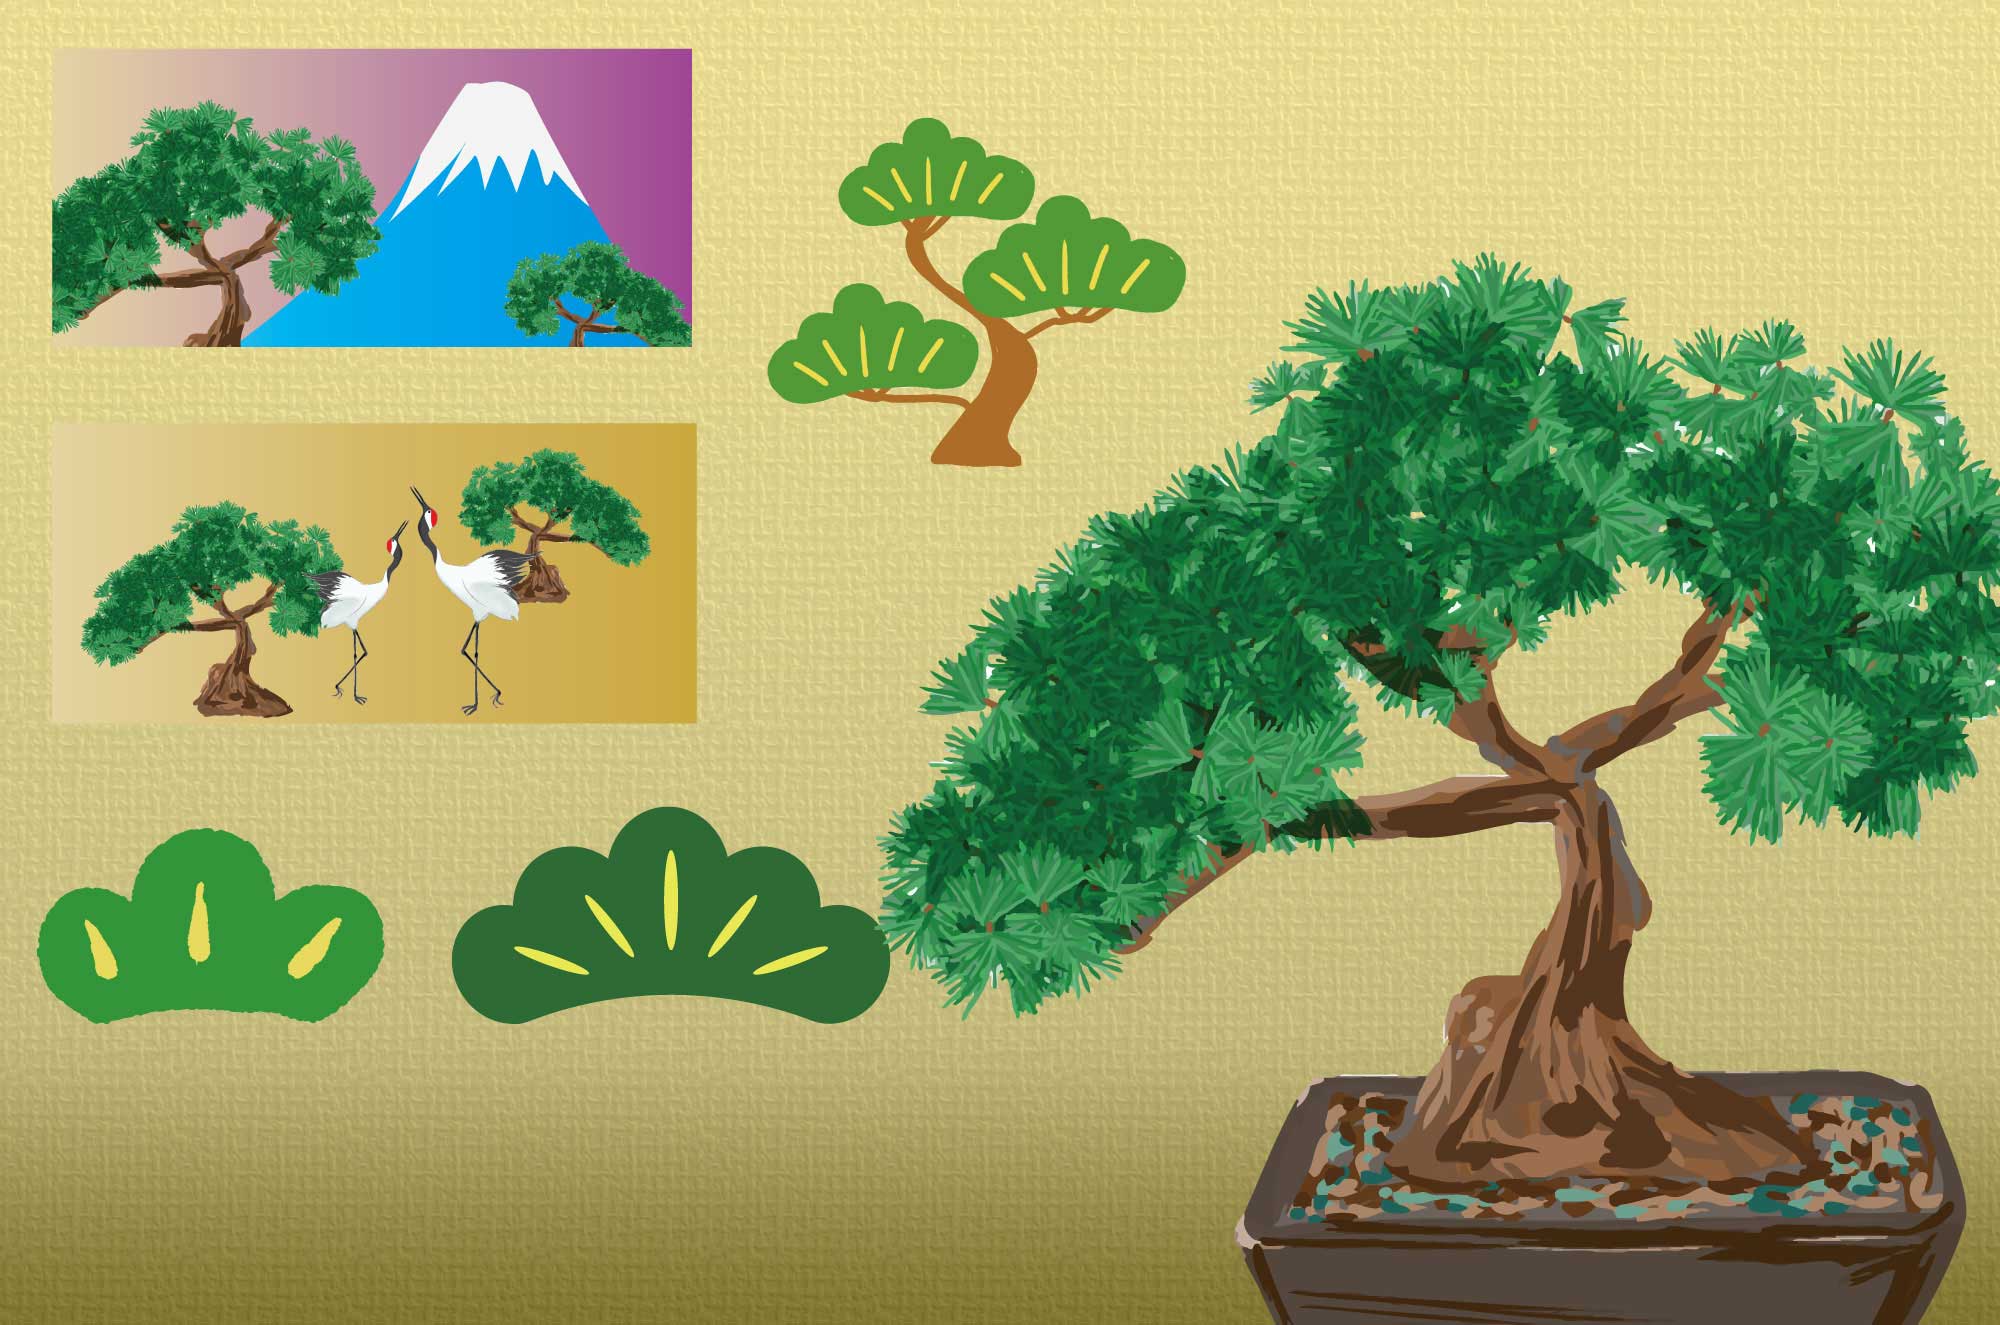 松のイラスト - 盆栽・和や縁起物のイメージフリー素材